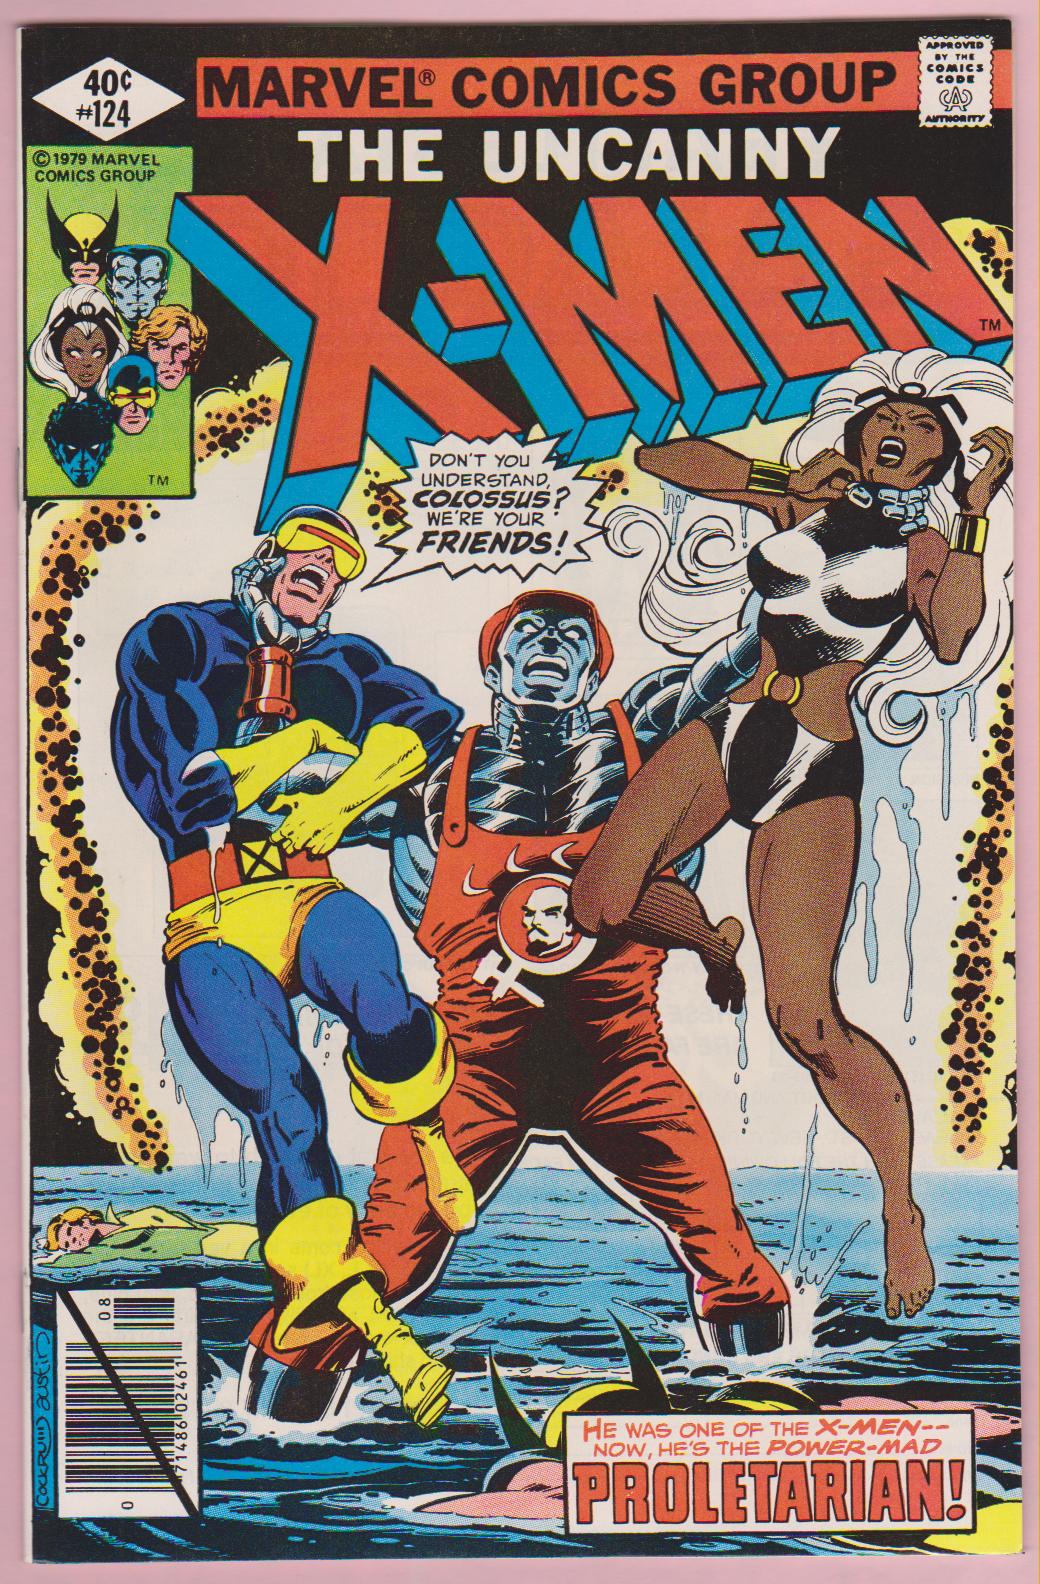 X-MEN Comics For Sale CHEAP at Crazy Eli's Discount Comics